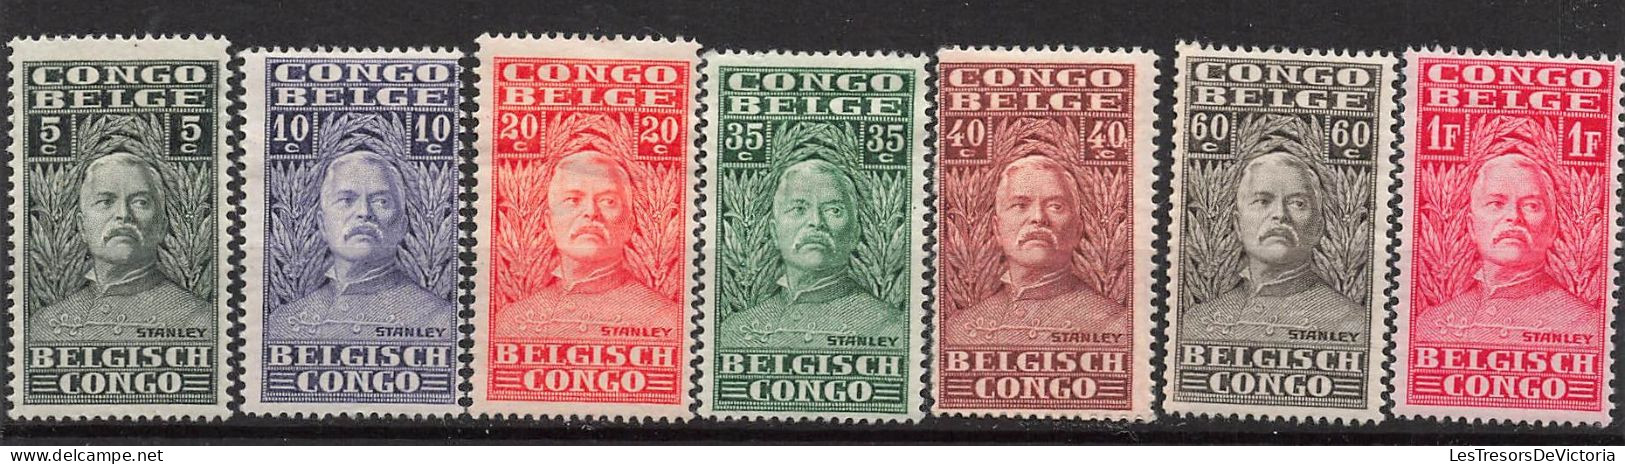 Timbre - Congo Belge - 1928 - COB135/49* - Explorateur Henri Morton Stanley - Cote 50 - Ungebraucht